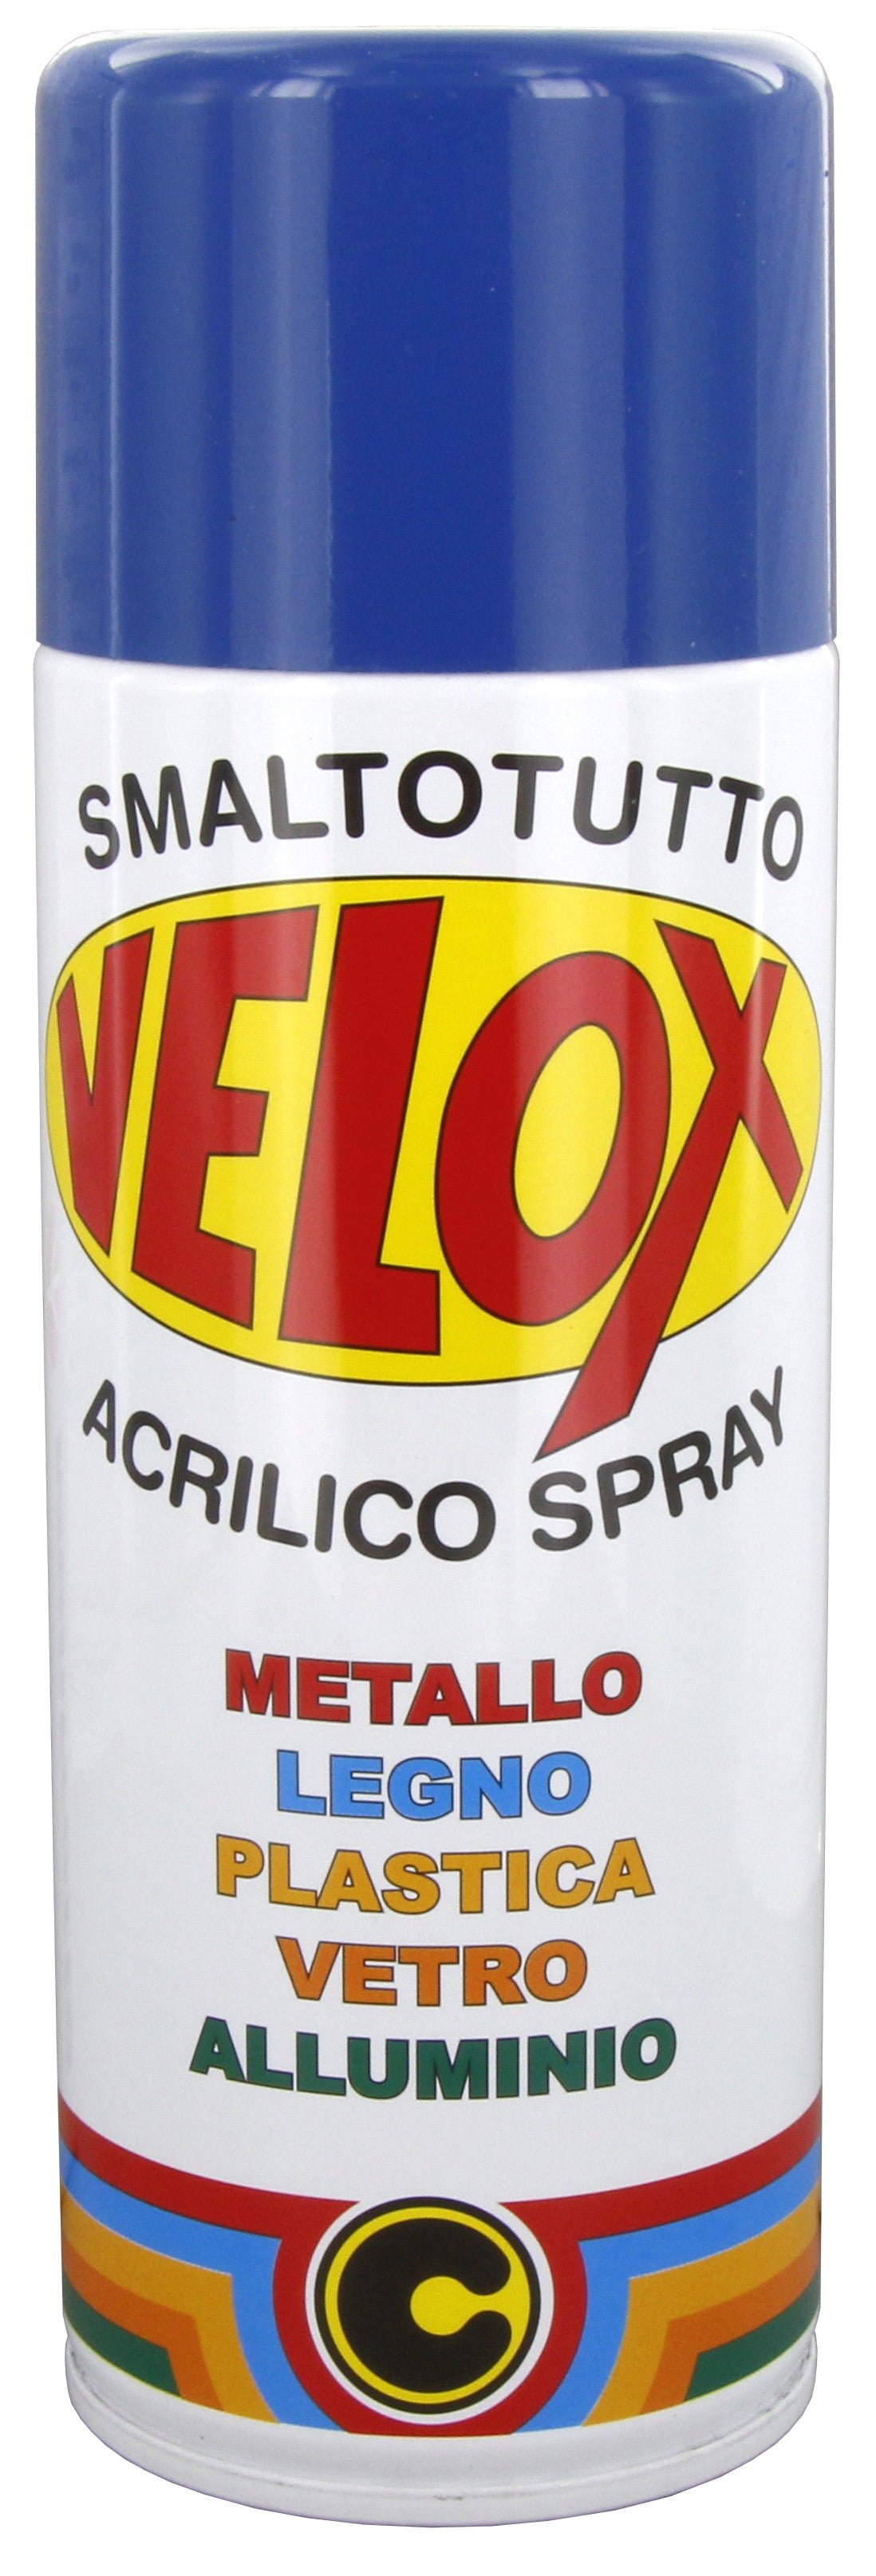 Velox spray acrilico bleu genziana ral 5010 ITAL G.E.T.E.